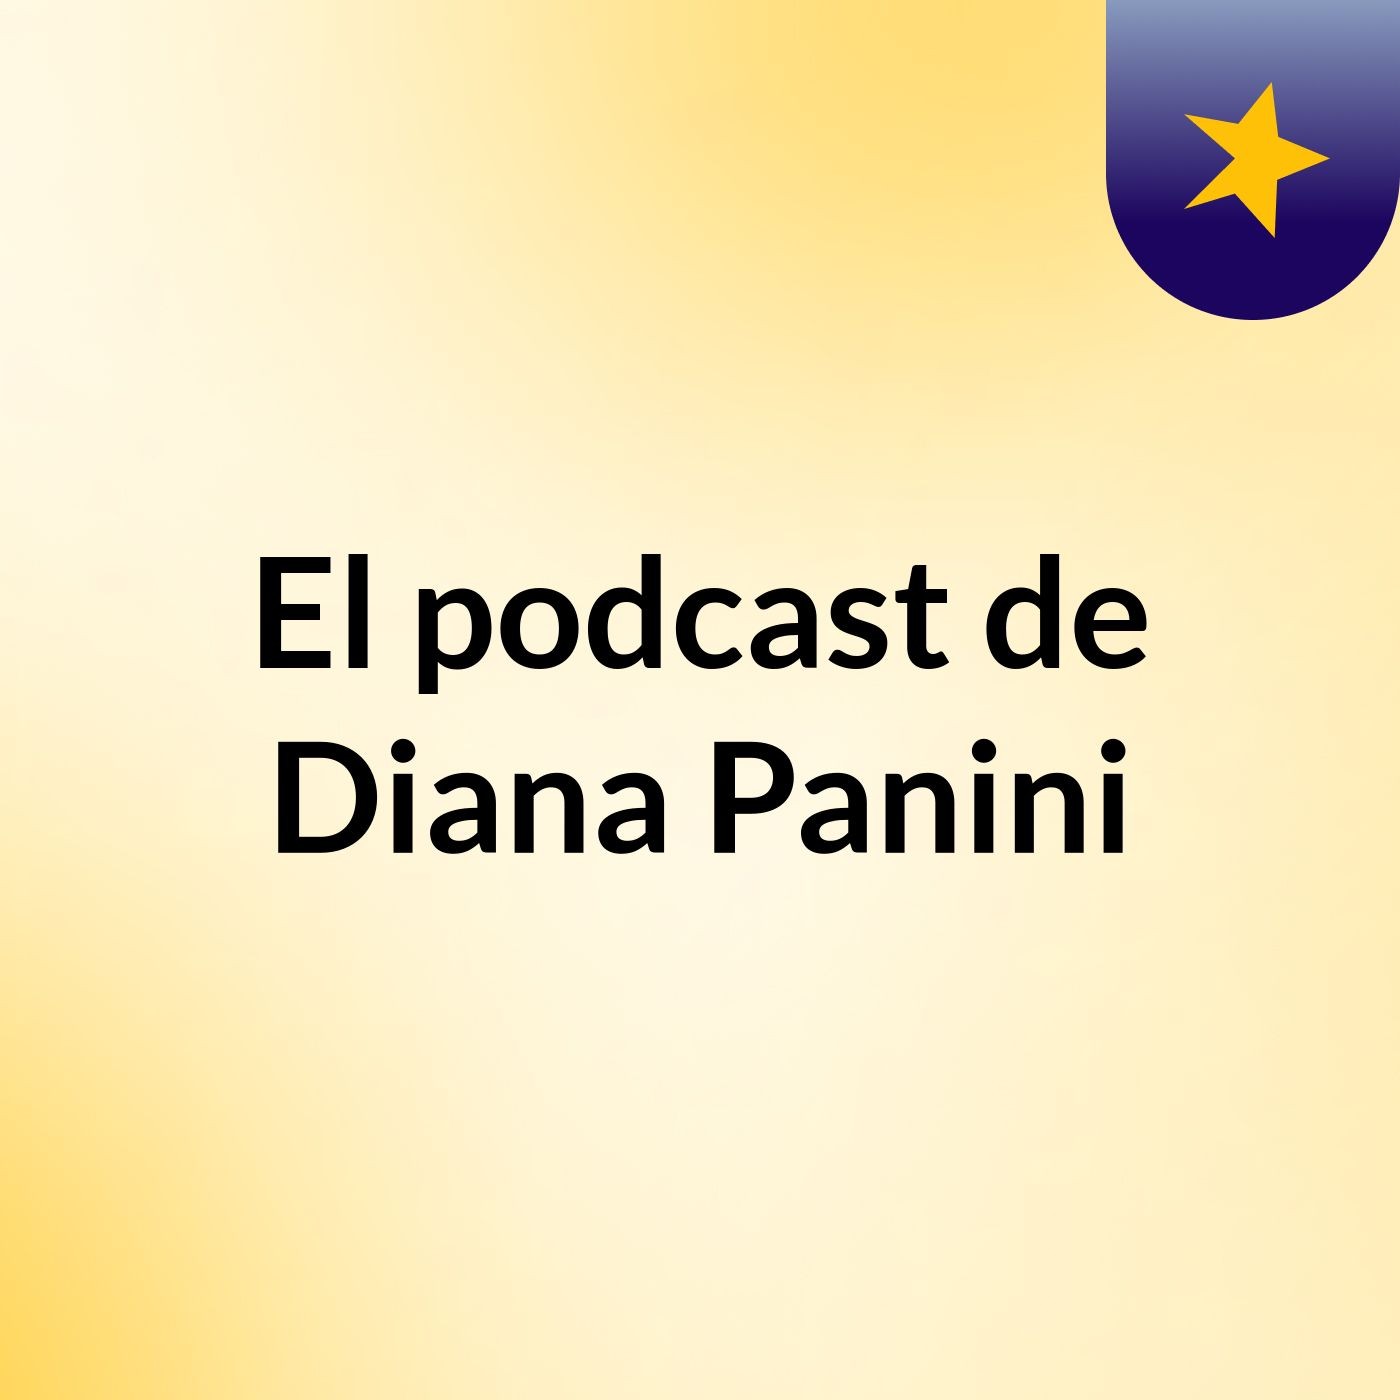 El podcast de Diana Panini